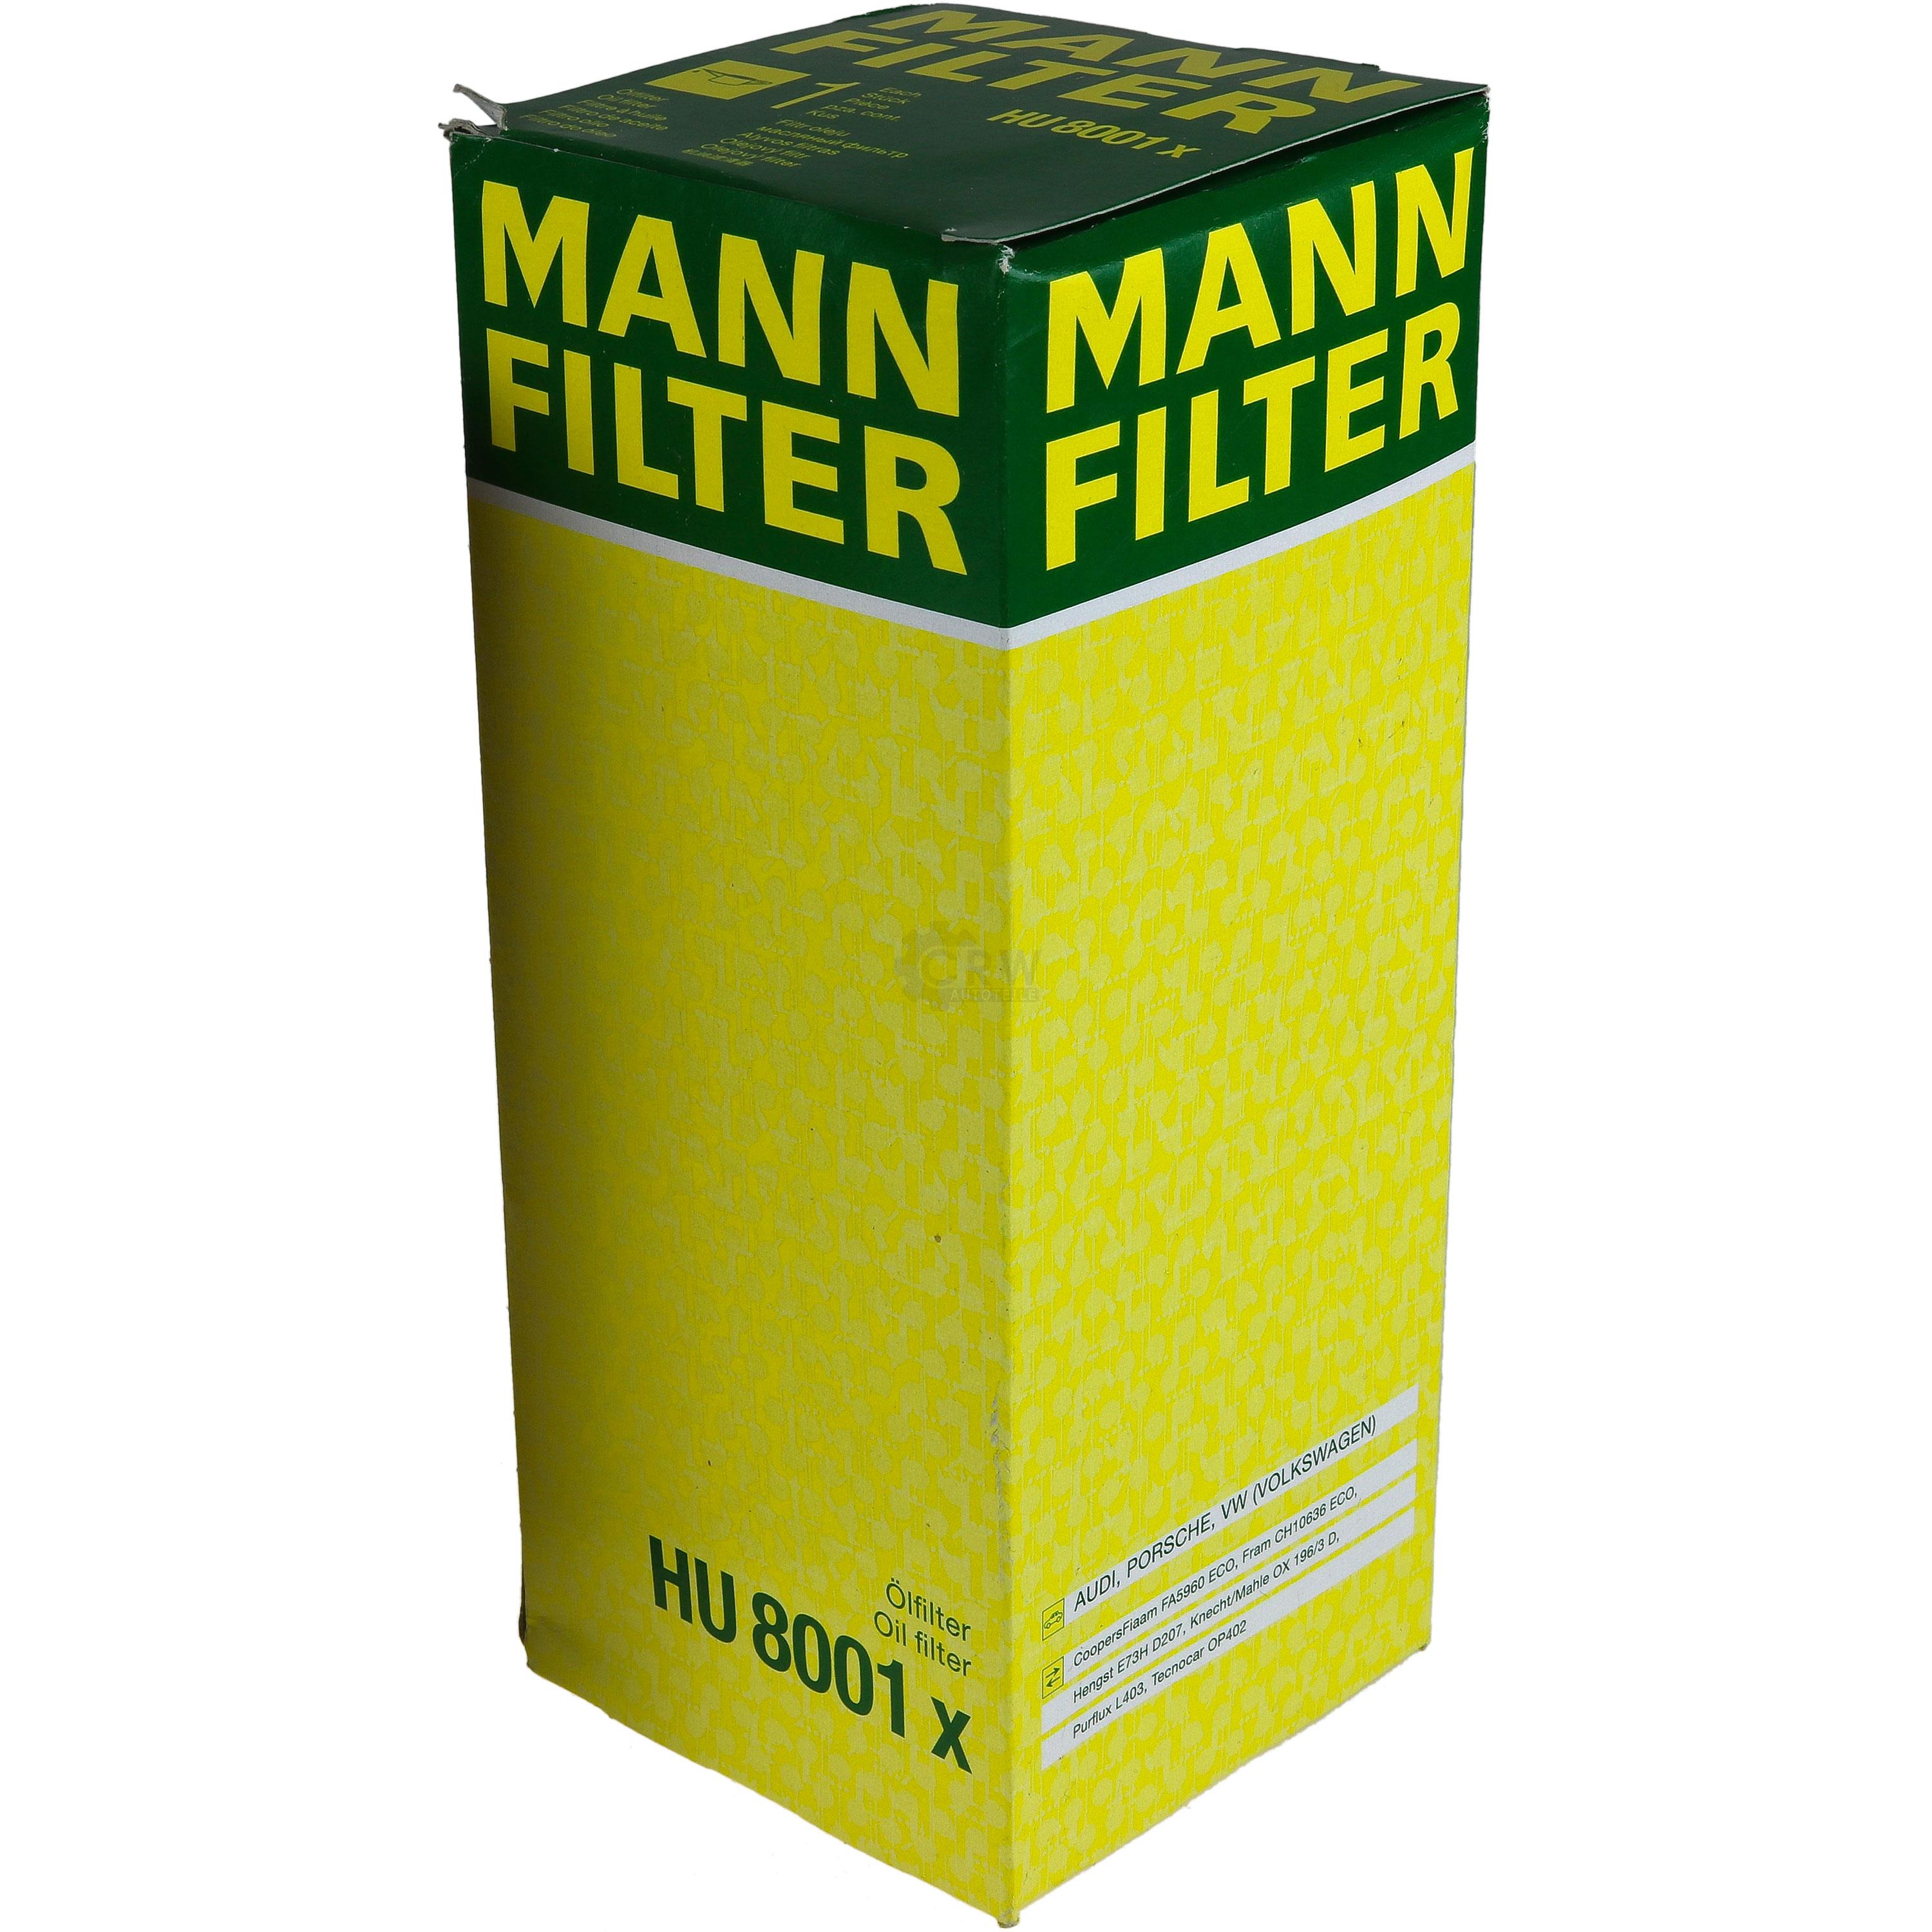 MANN-FILTER Ölfilter HU 8001 x Oil Filter